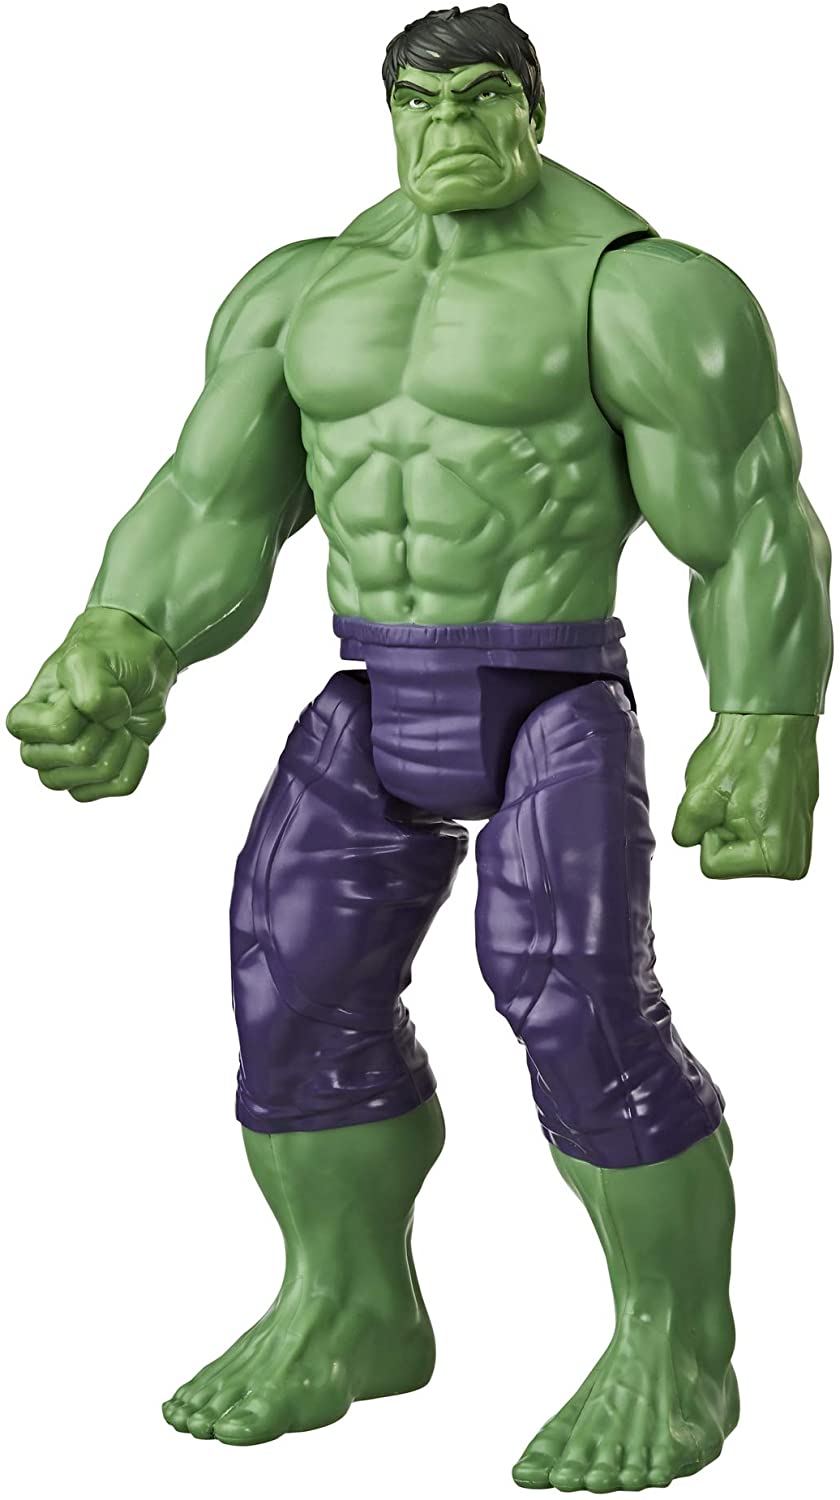 Marvel Hulk Talking Figure